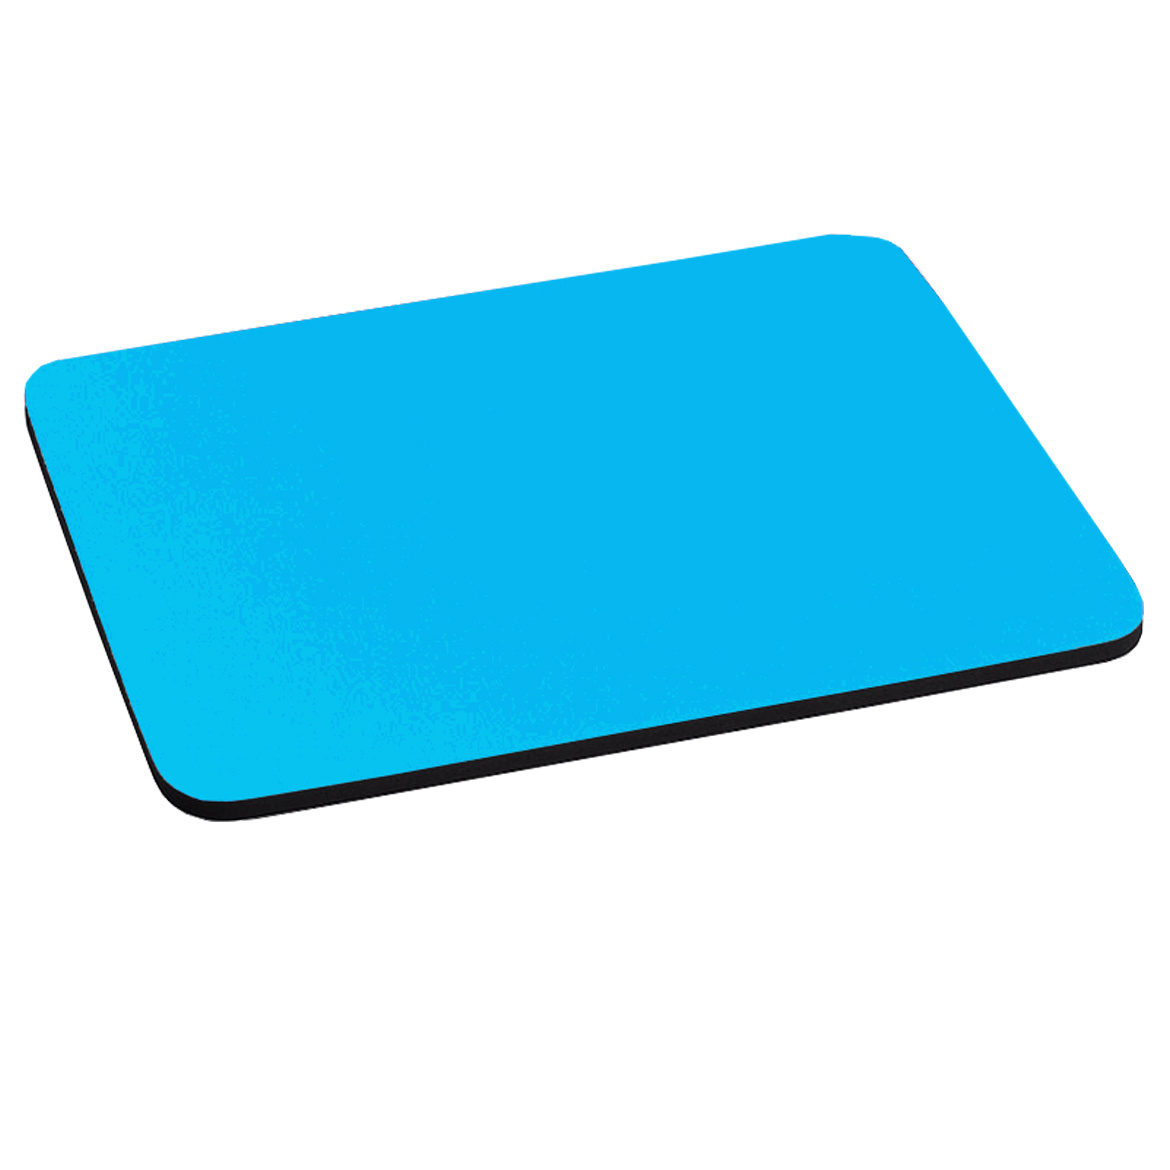 Mousepad Brobotix Antiderrapante Azul Turquesa 144755-3